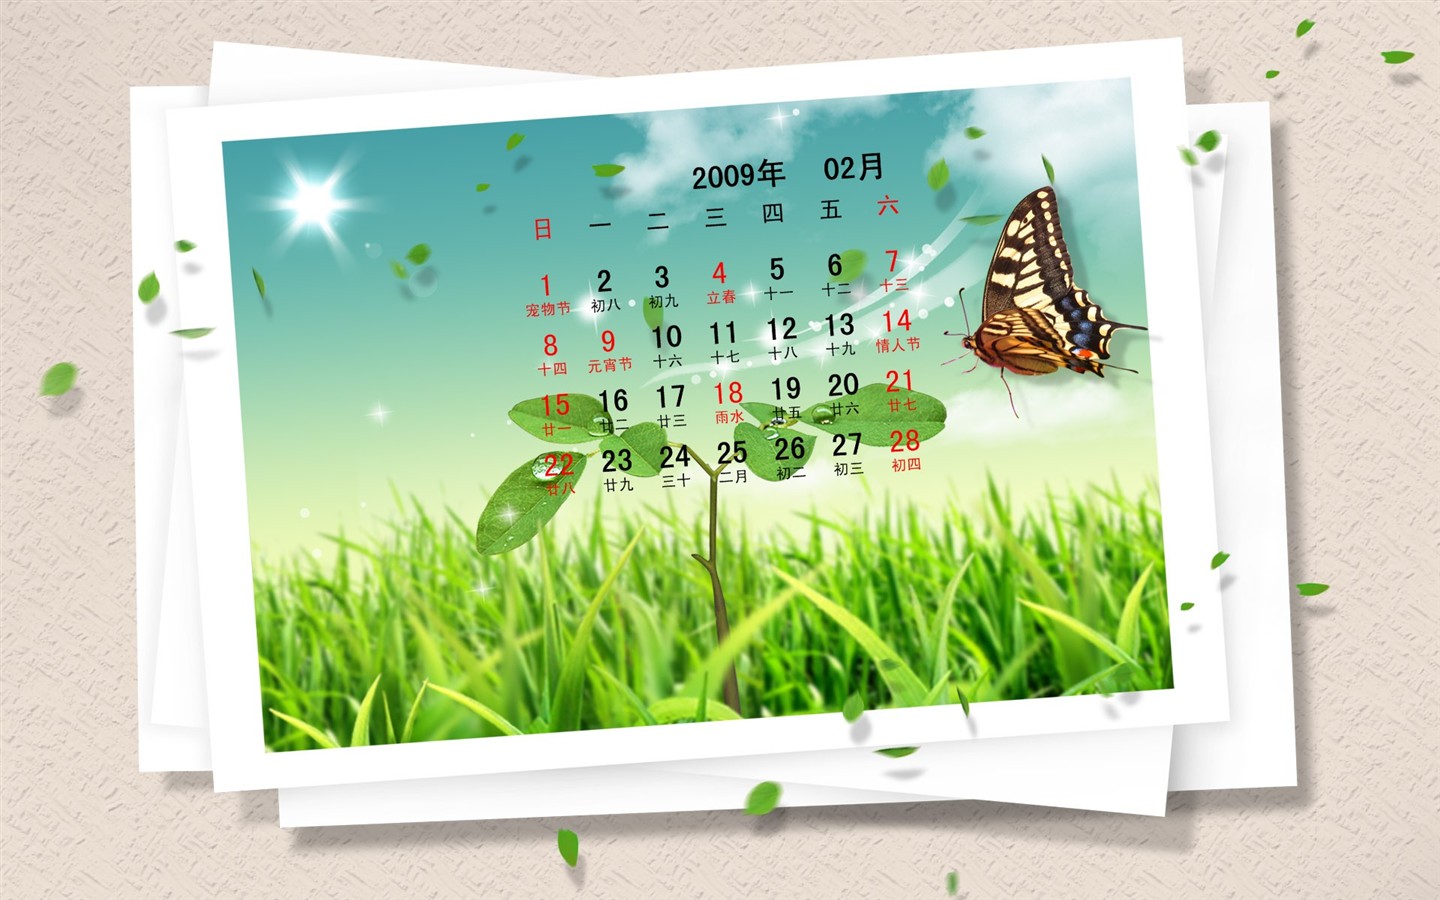 PaperArt 09 años en el fondo de pantalla de calendario febrero #29 - 1440x900